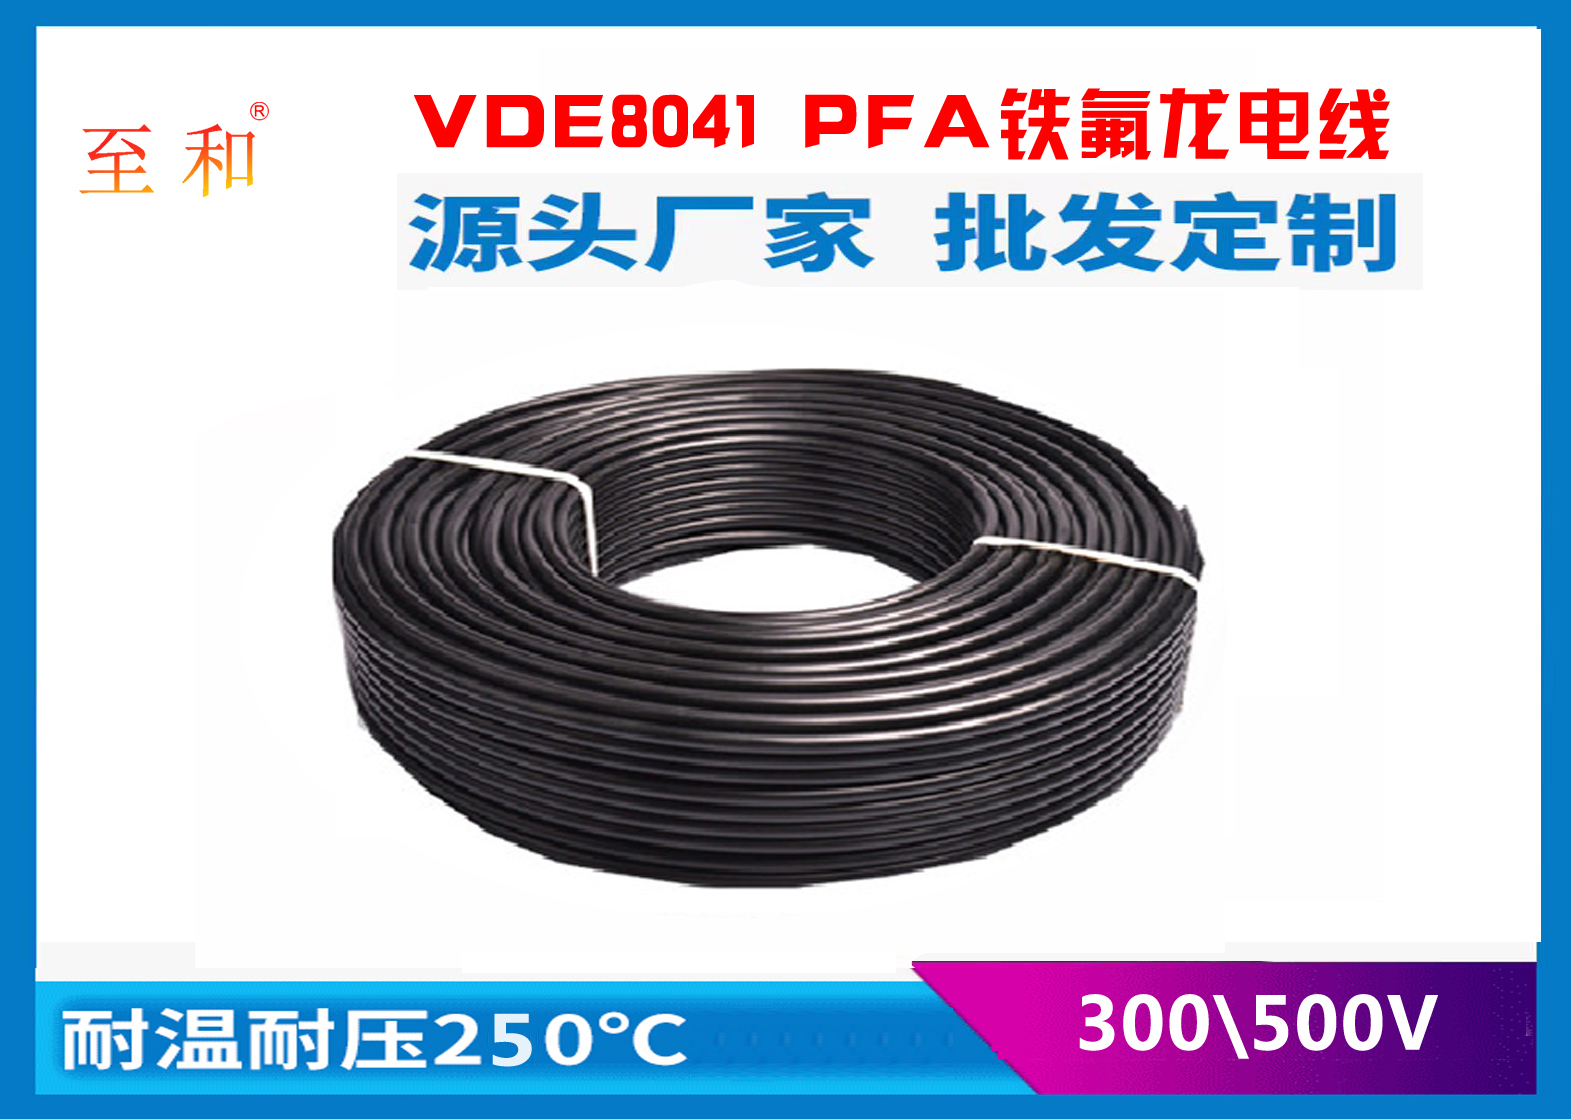 VDE8041 PFA铁氟龙电线